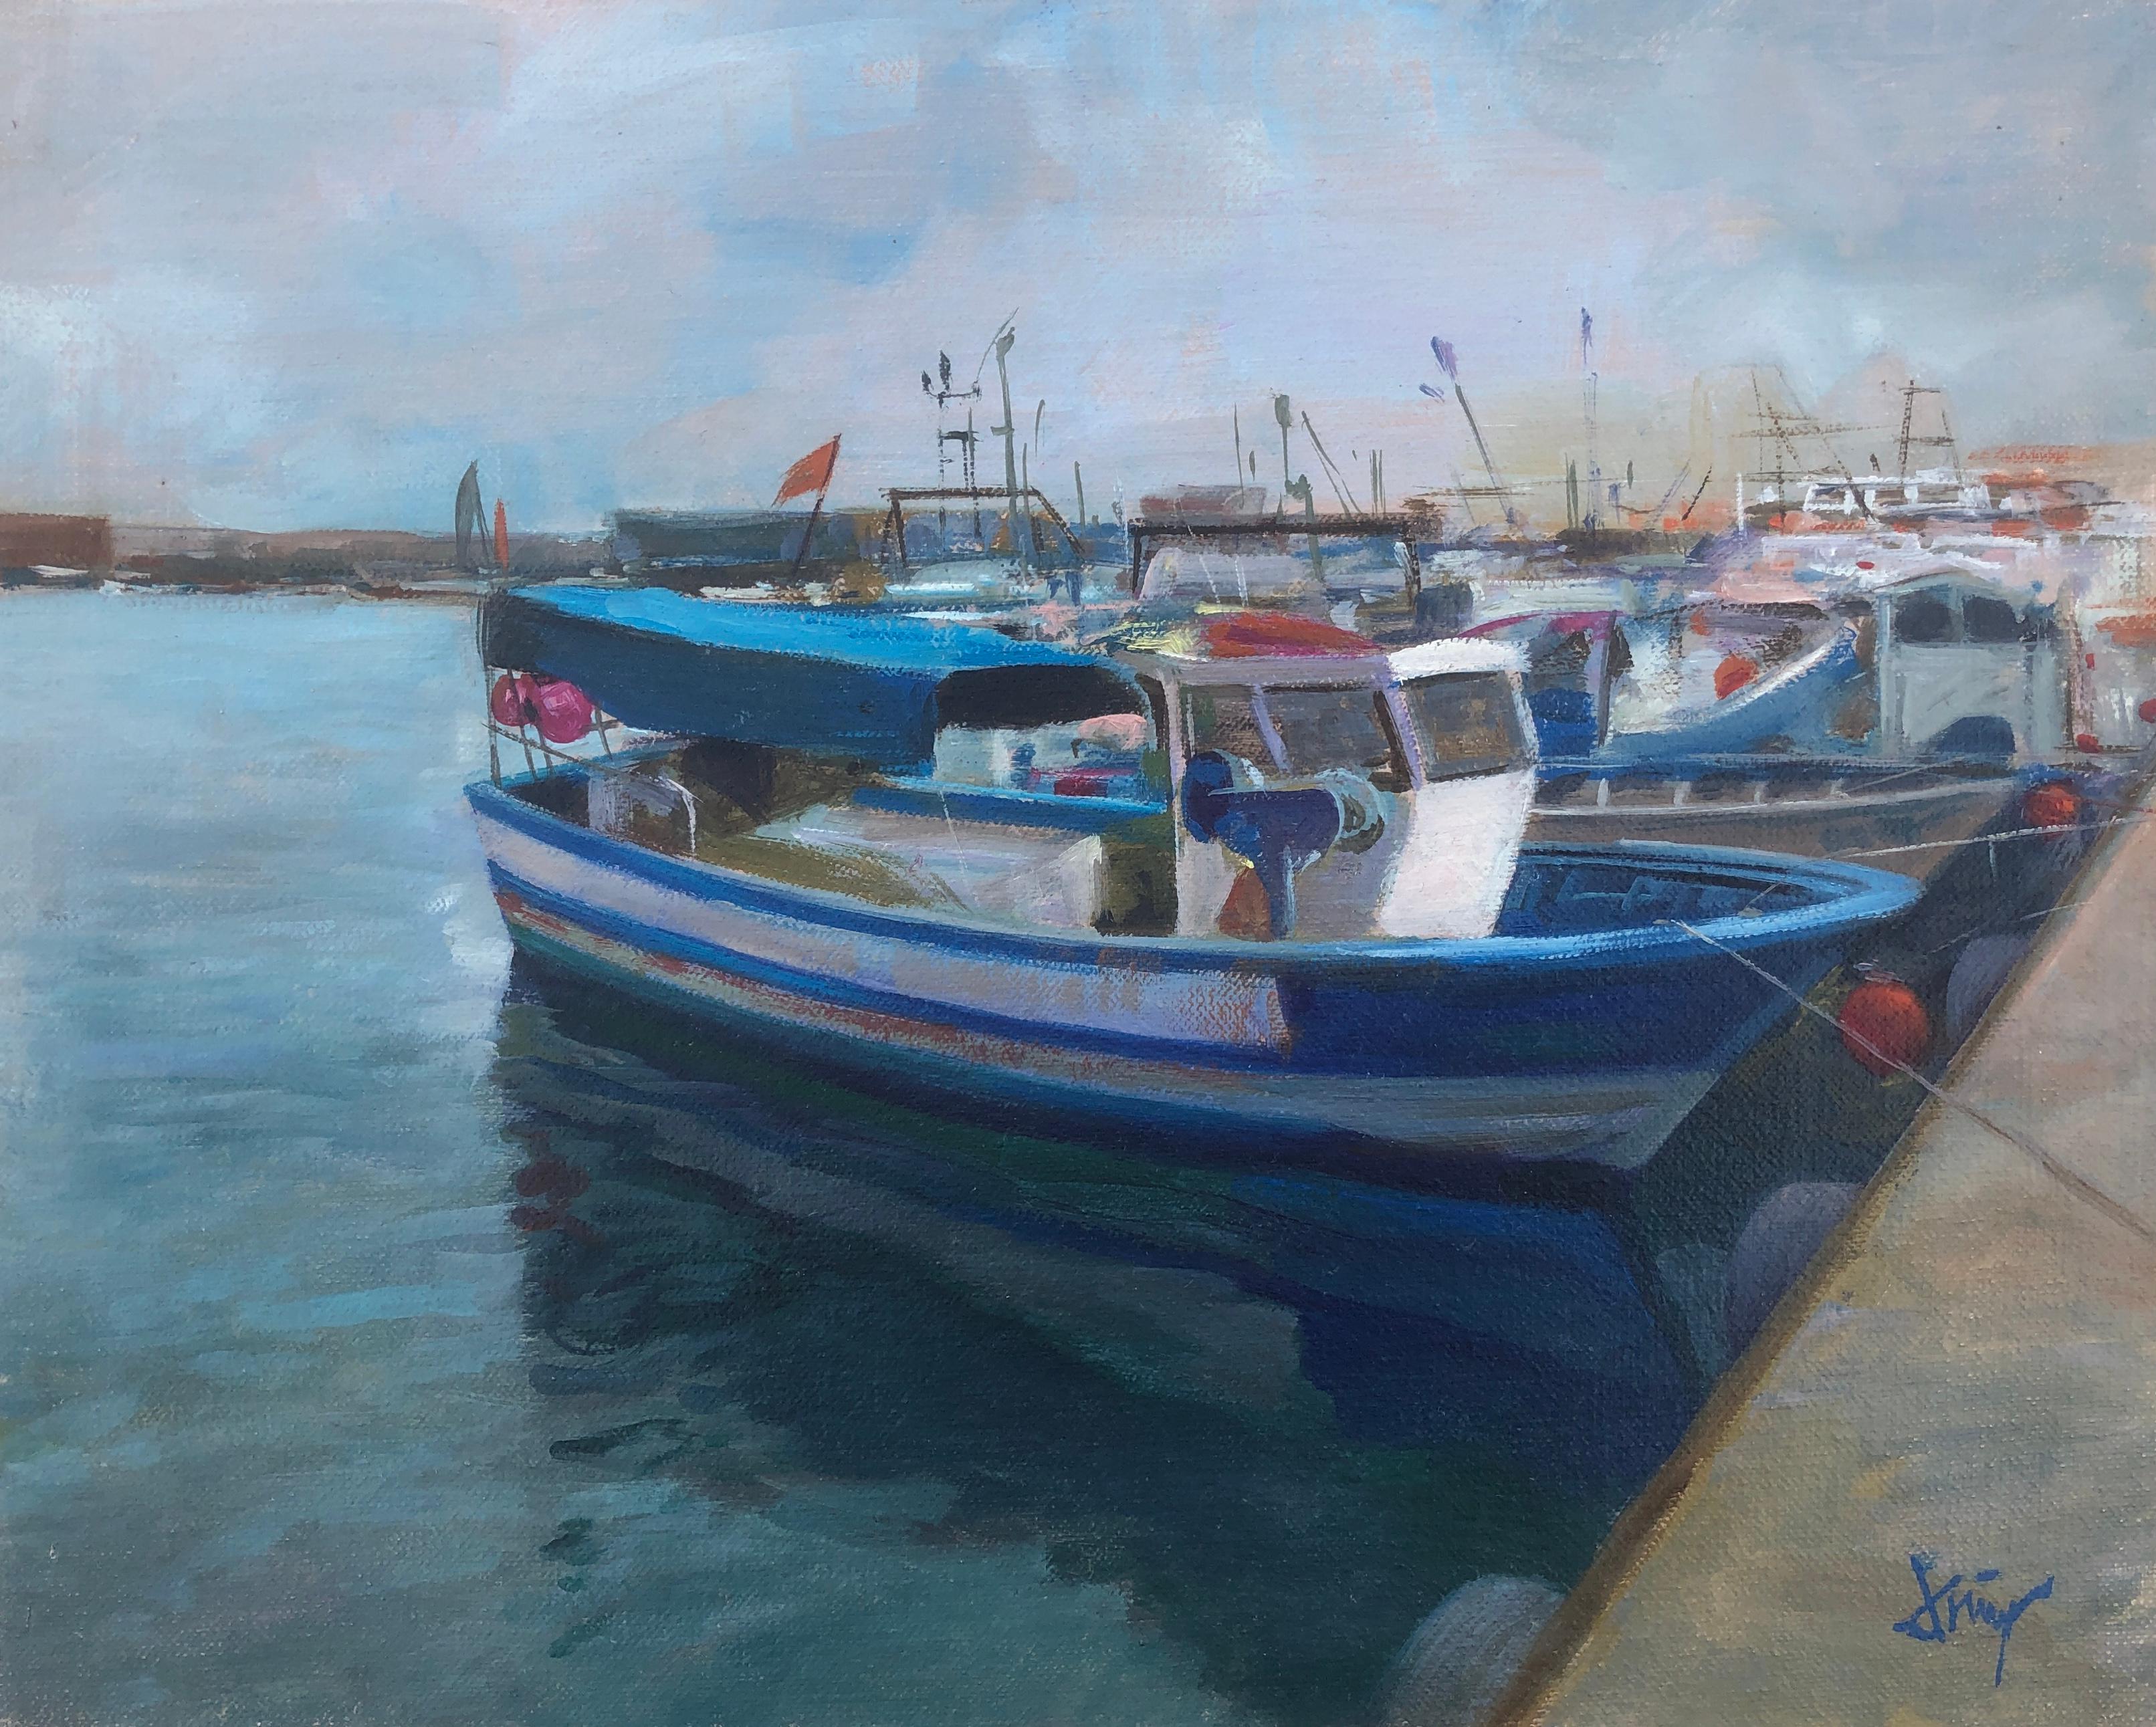 Landscape Painting Domingo Alvarez Gomez - Paysage marin Espagne huile sur toile peinture bateaux bateaux